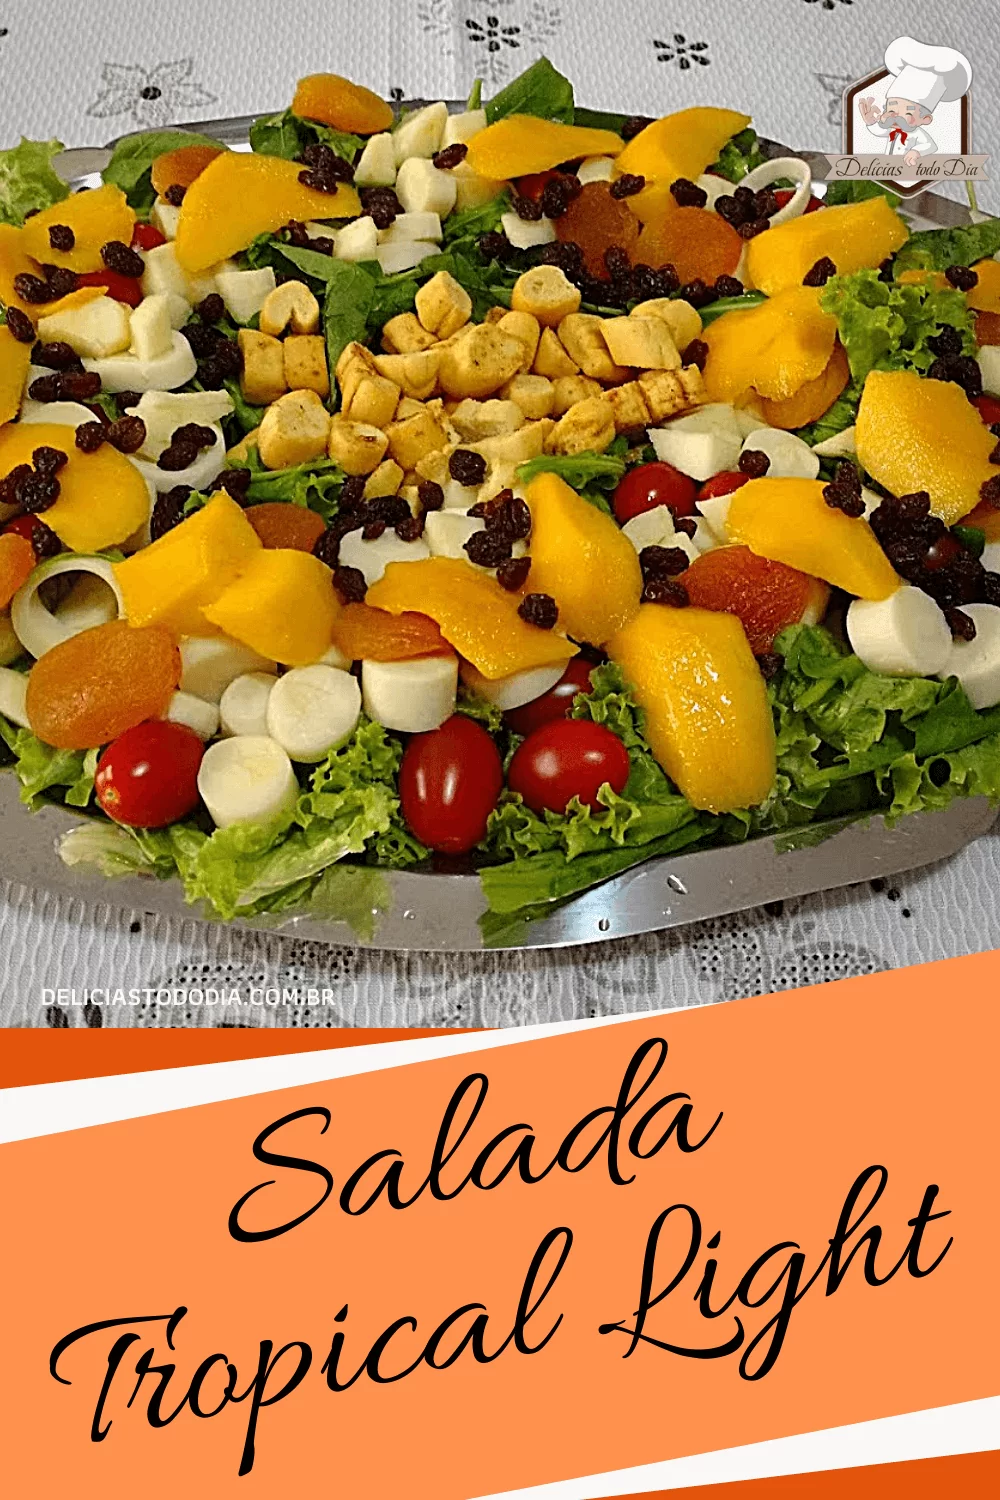 Salada Tropical Light | Delícias Todo Dia